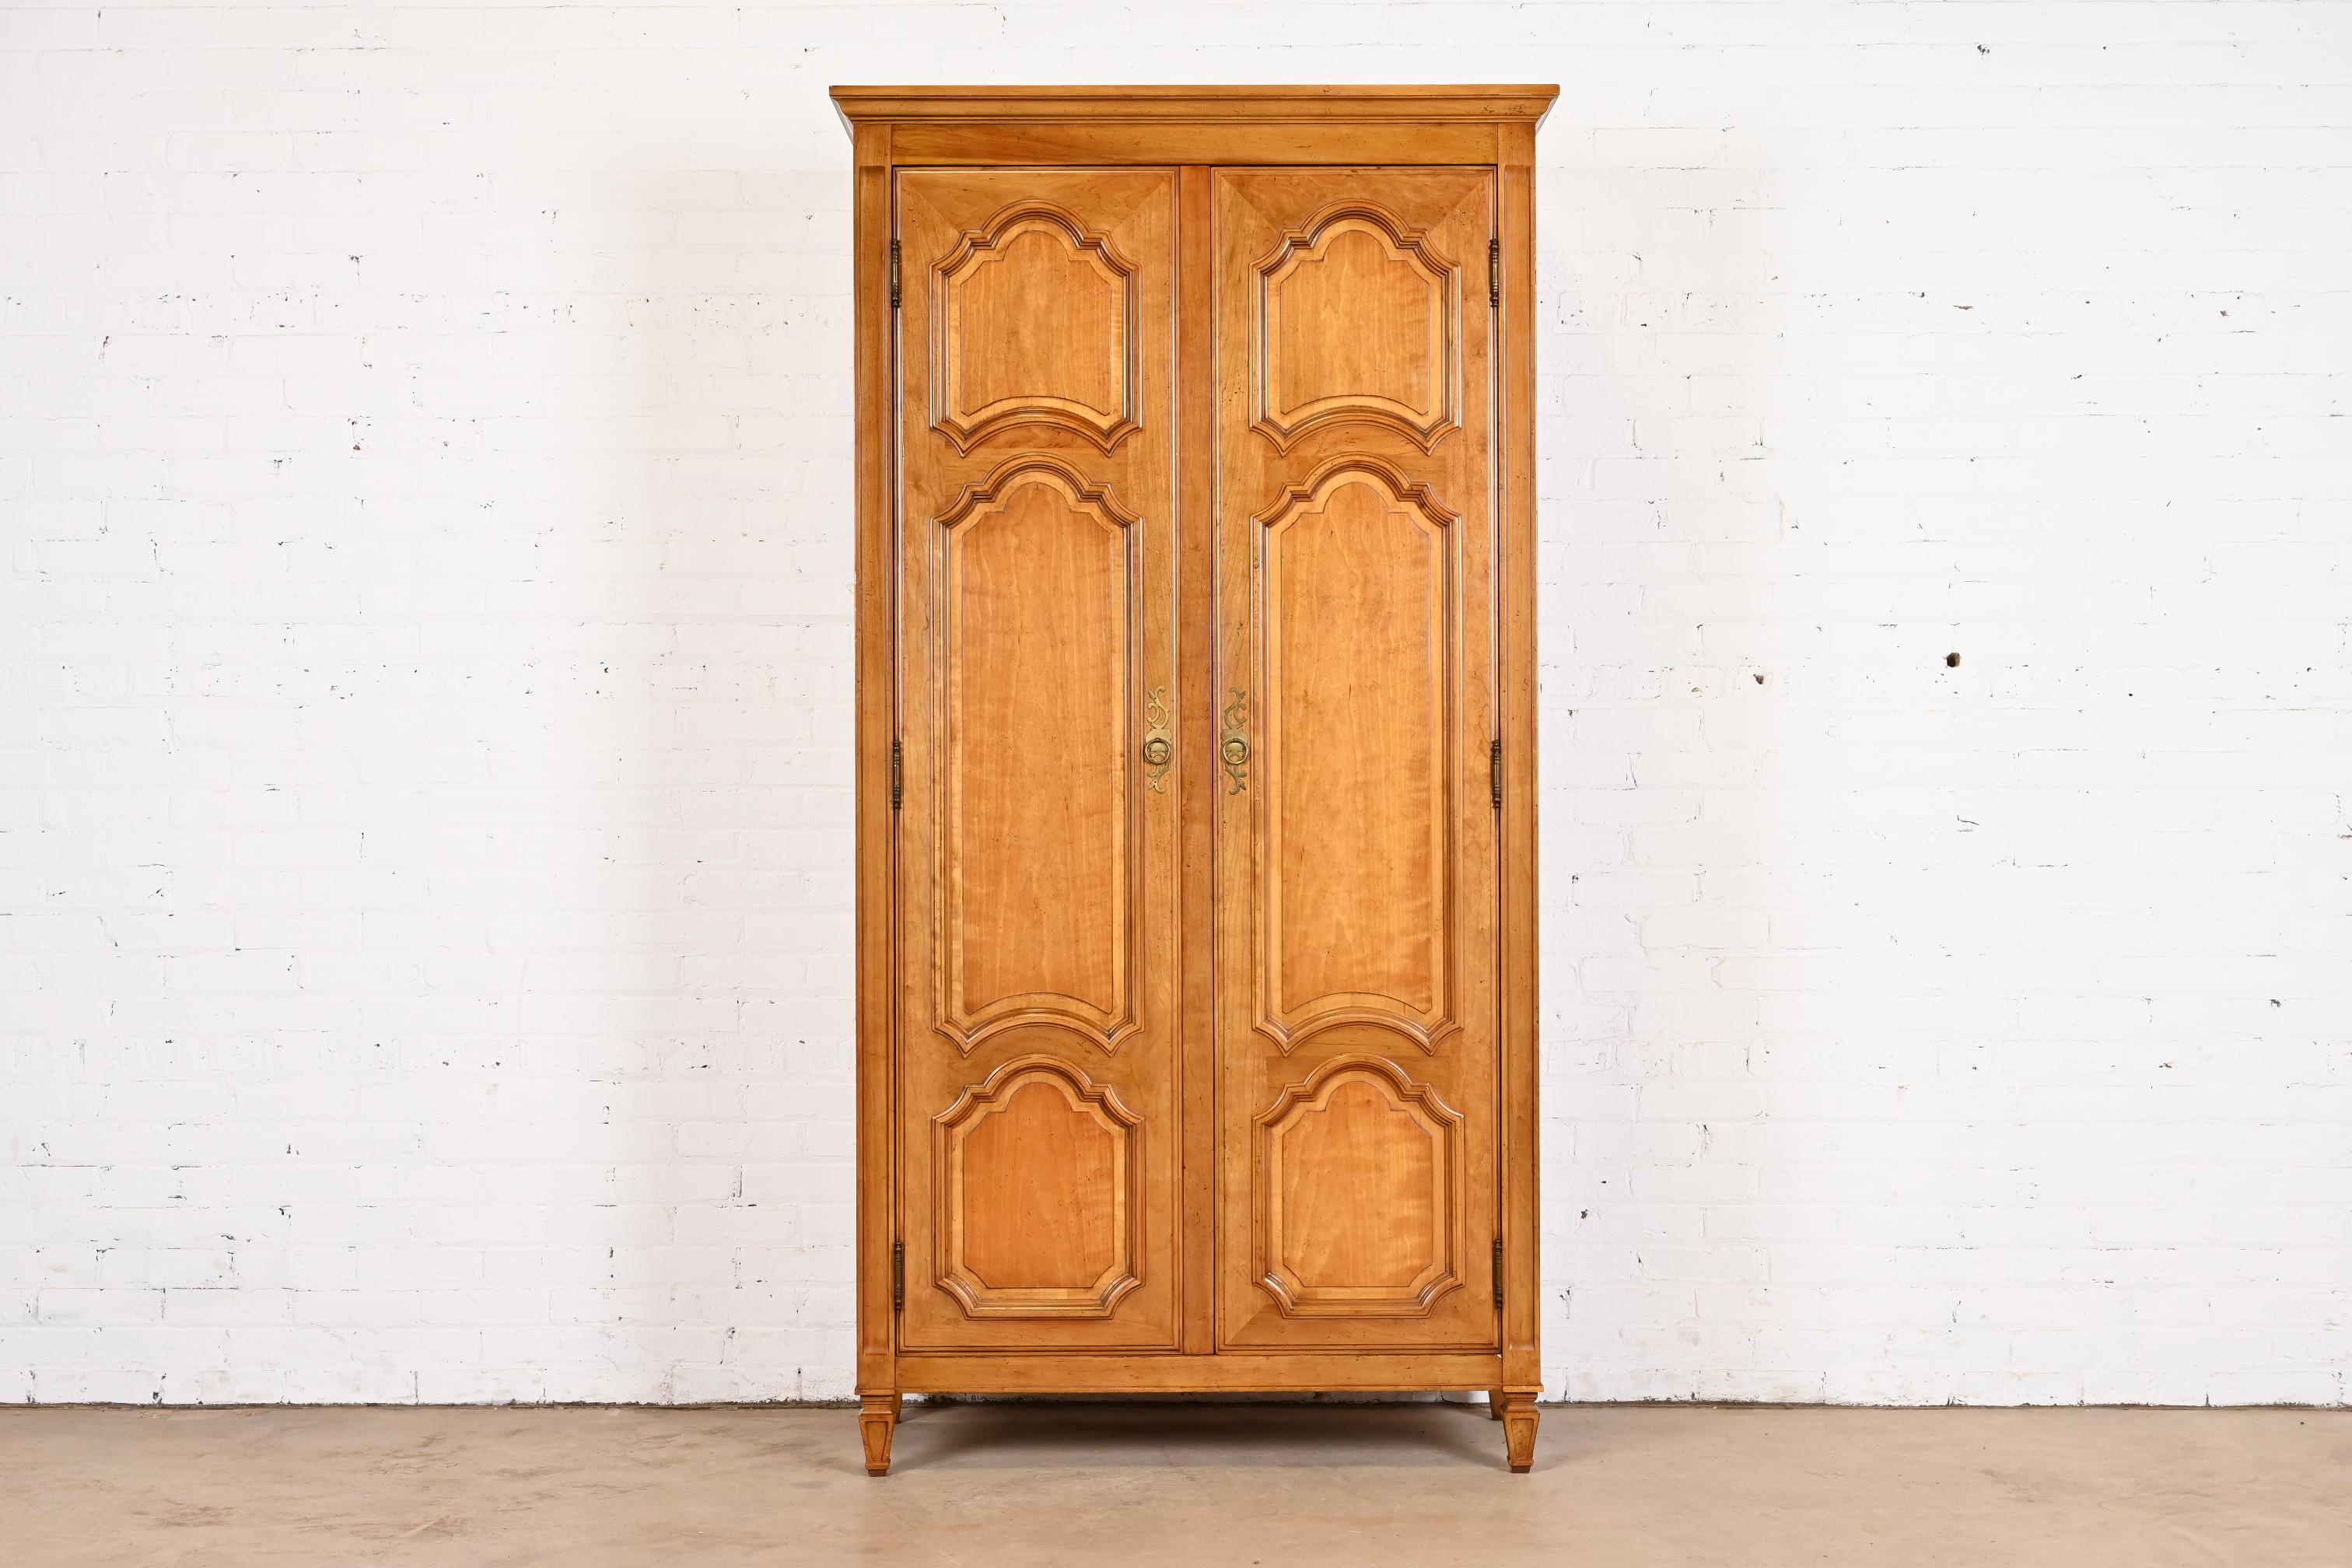 Magnifique armoire ou presse à linge de style Régence Louis XVI.

Par Baker Furniture, Collection 